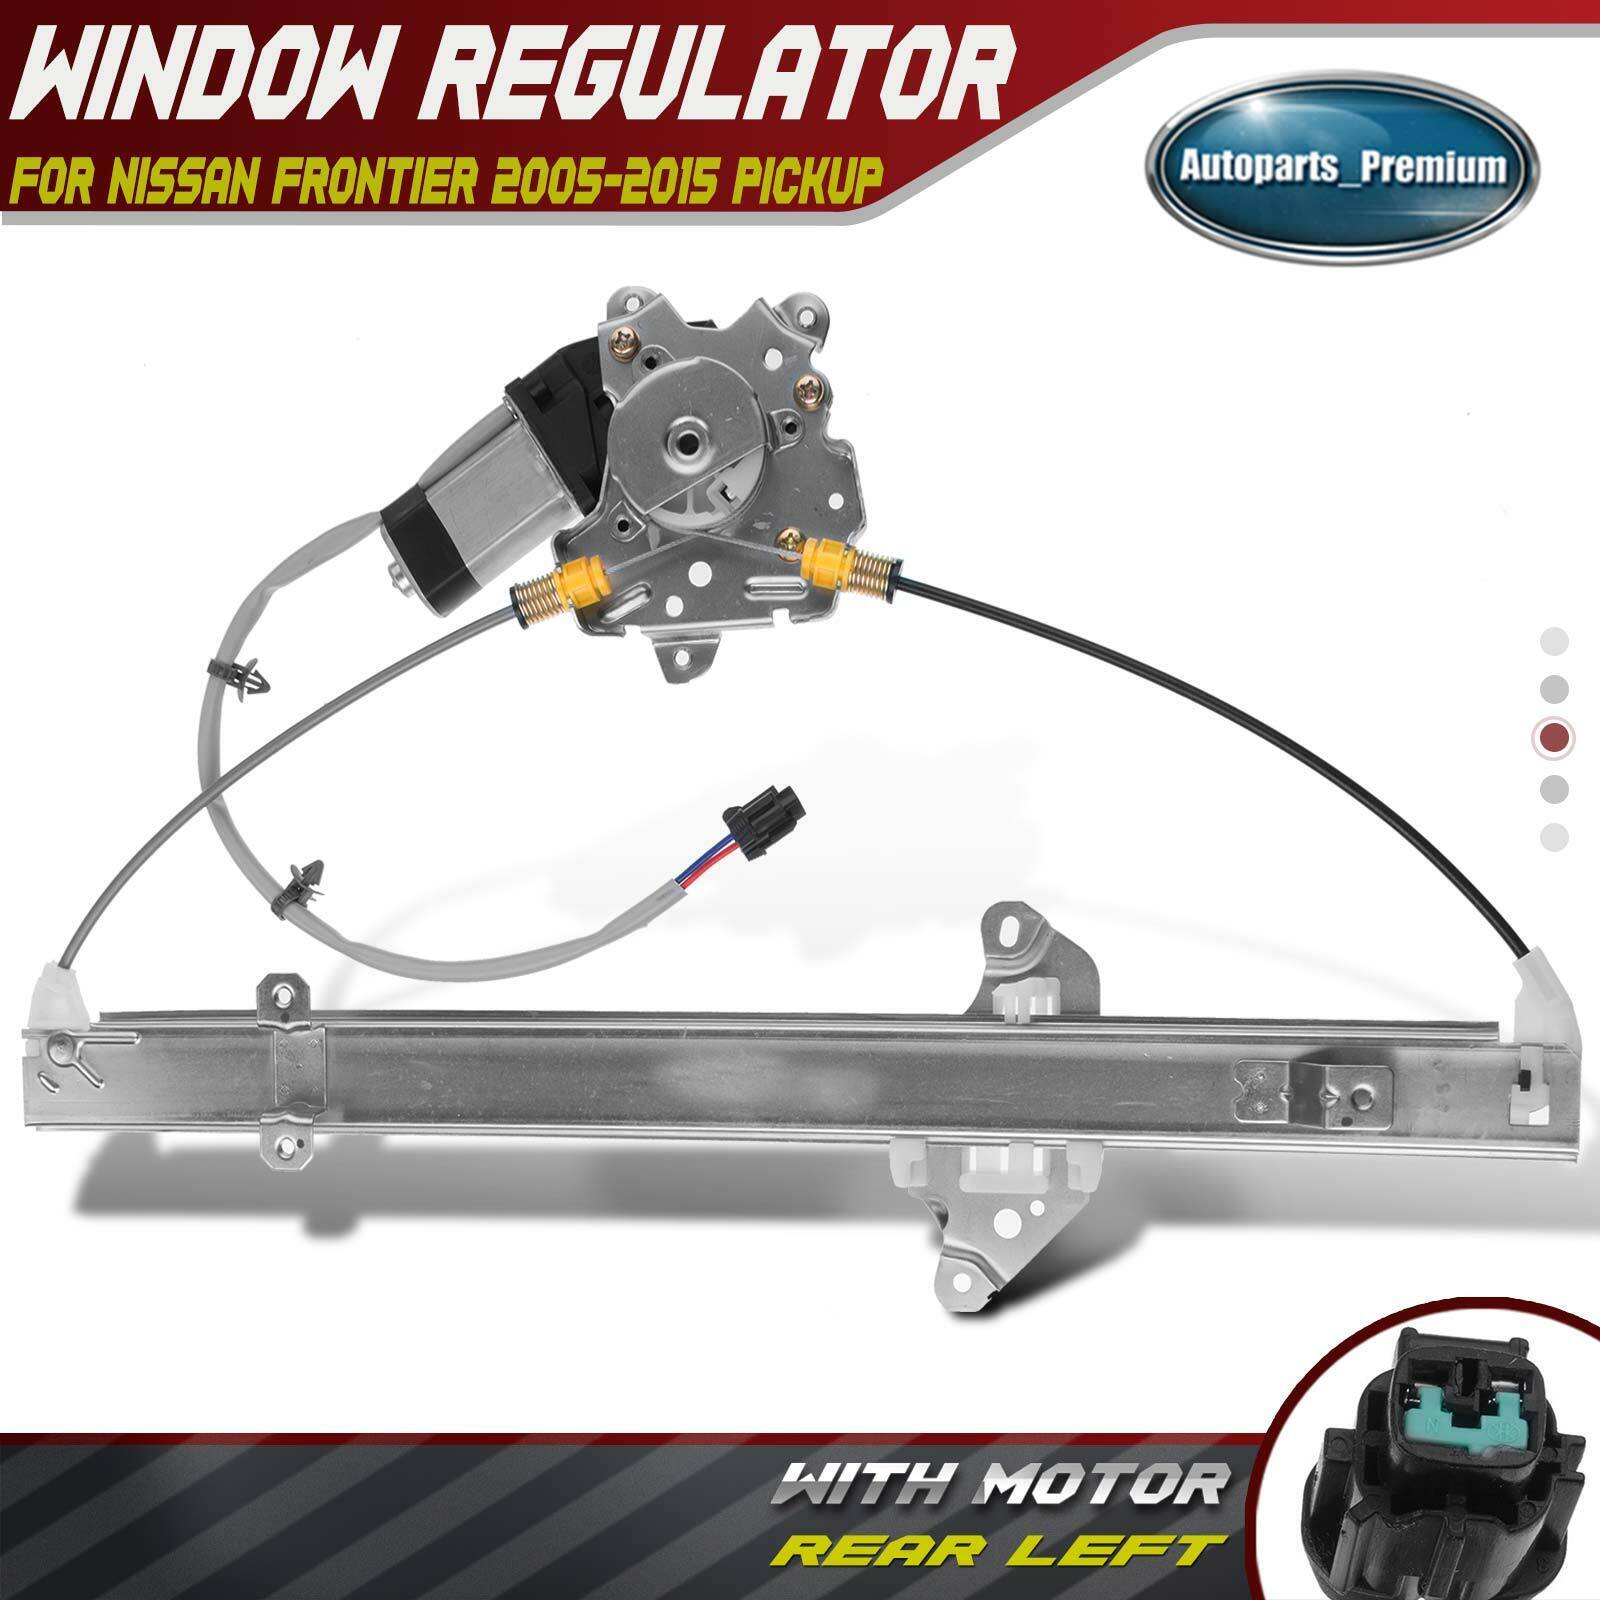 Power Window Regulator w/ Motor for Nissan Frontier 2005-2015 Pickup Rear Left